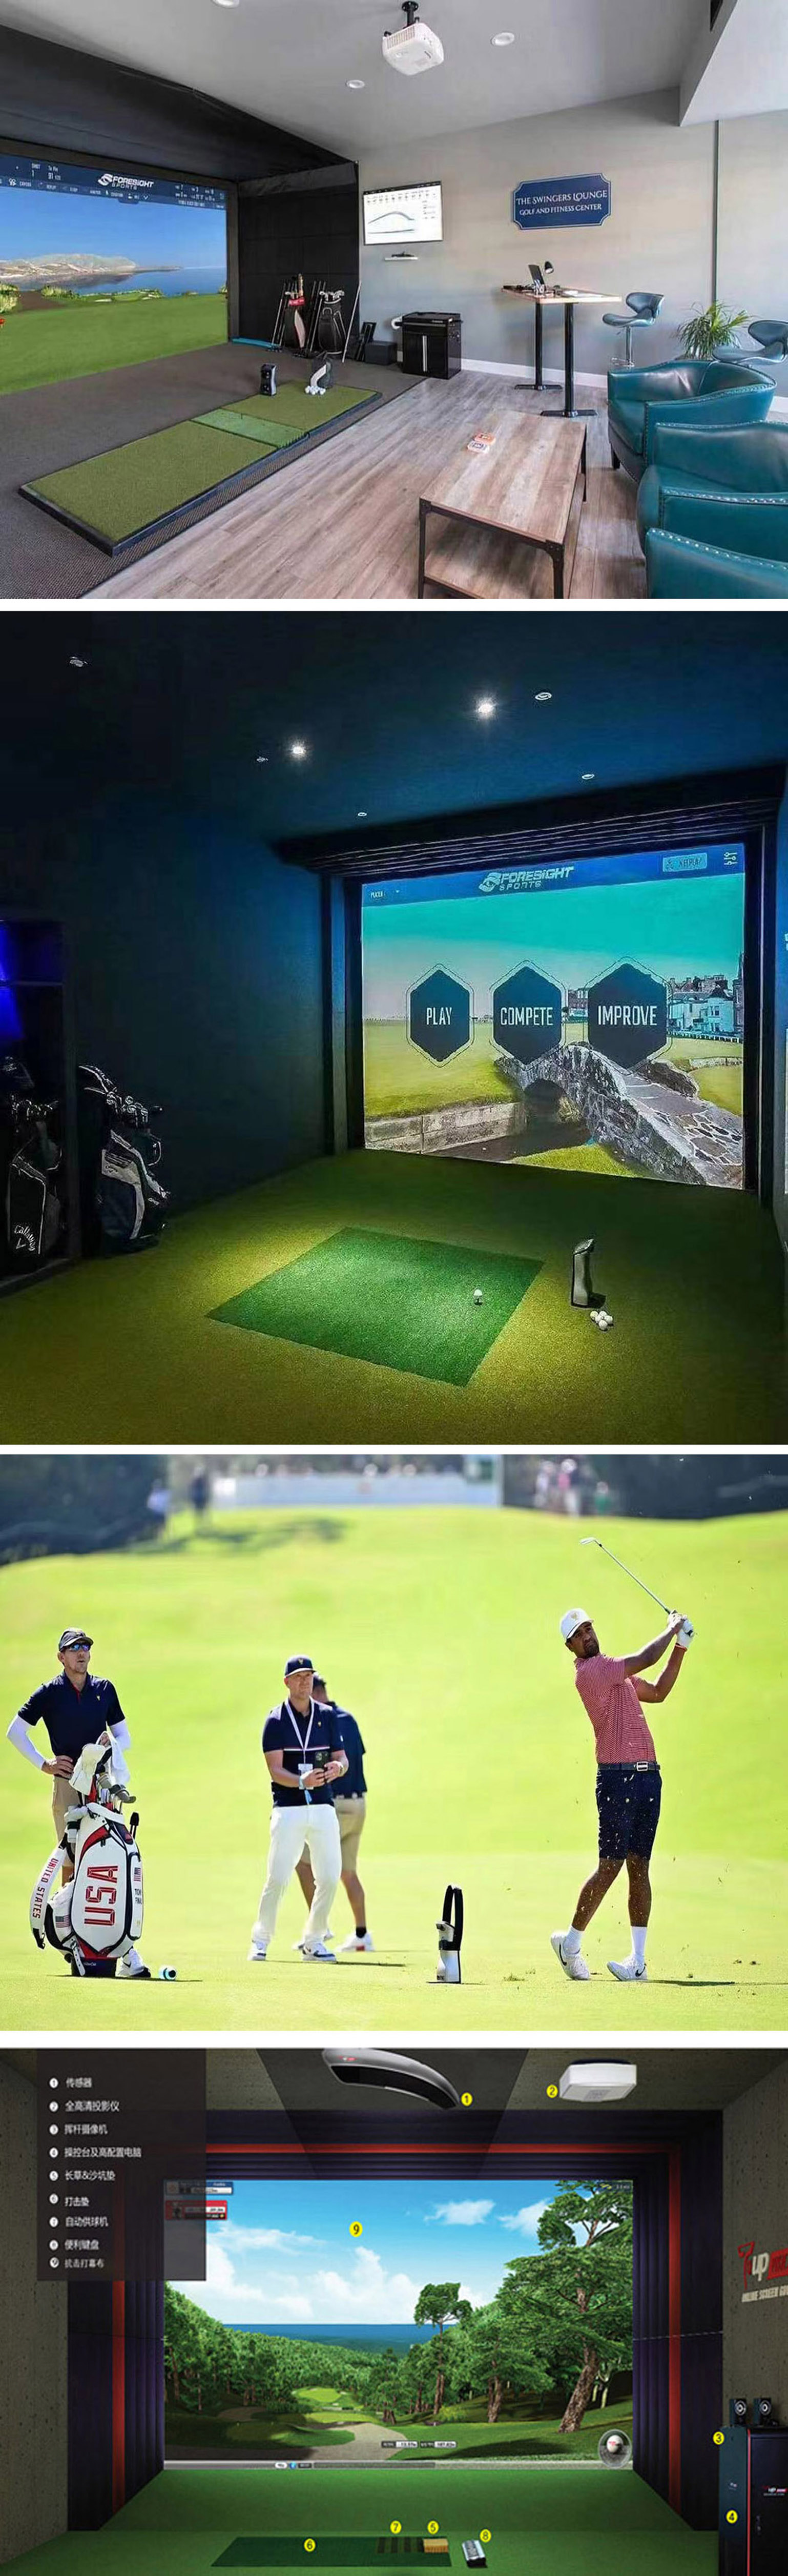 模拟室内高尔夫技术 001.jpg